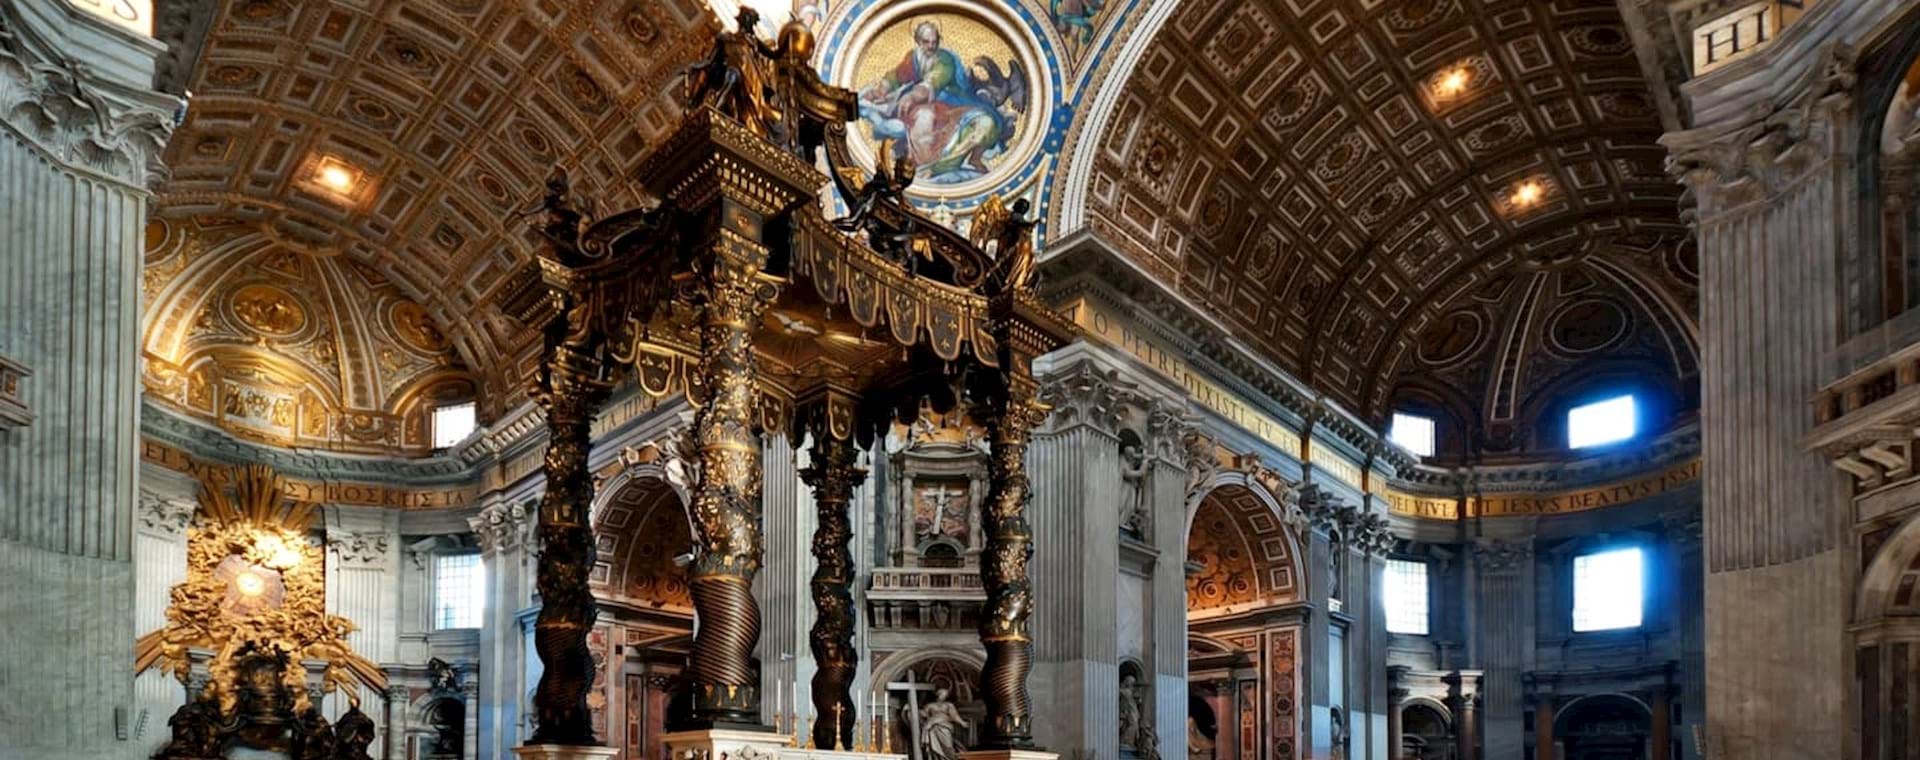 Vatican Semi Private Tour - Skip the Line Access - Dark Rome